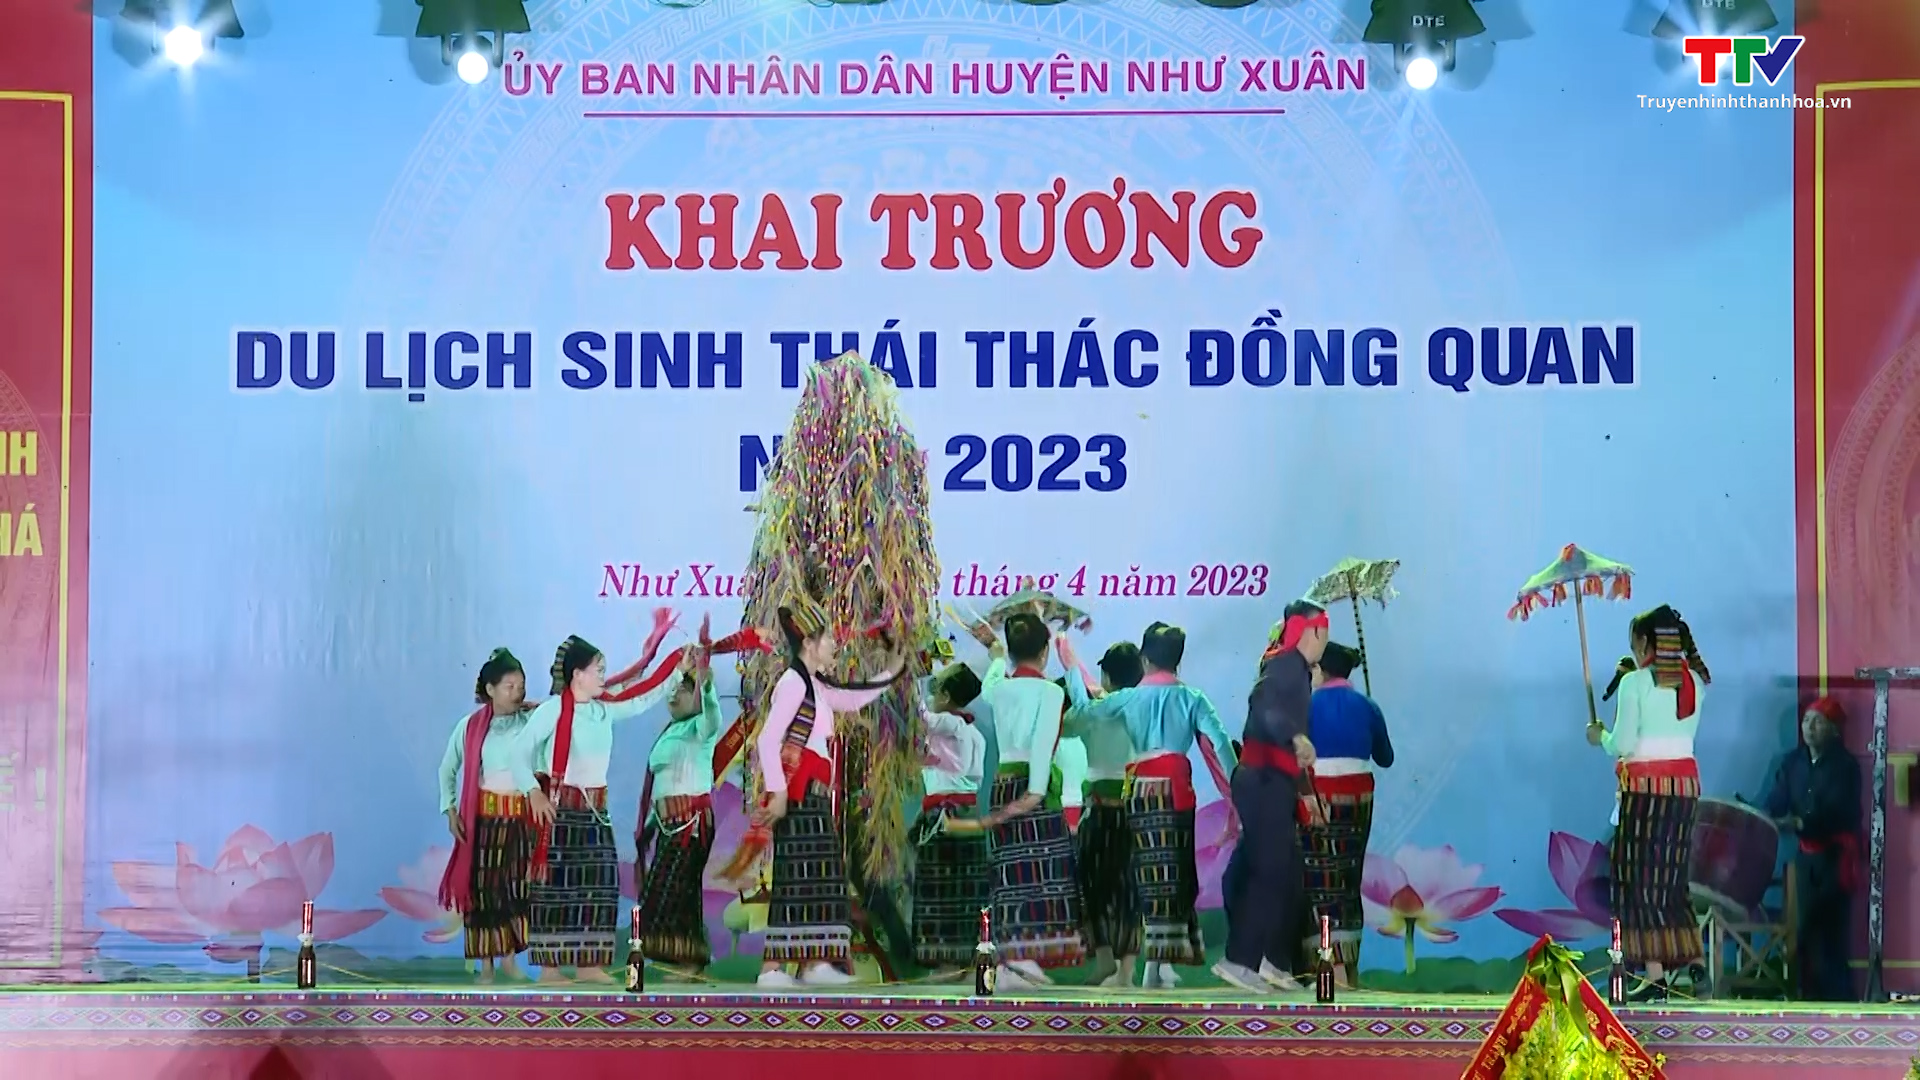 Như Xuân khai trương du lịch sinh thái Thác Đồng Quan năm 2023 - Ảnh 6.